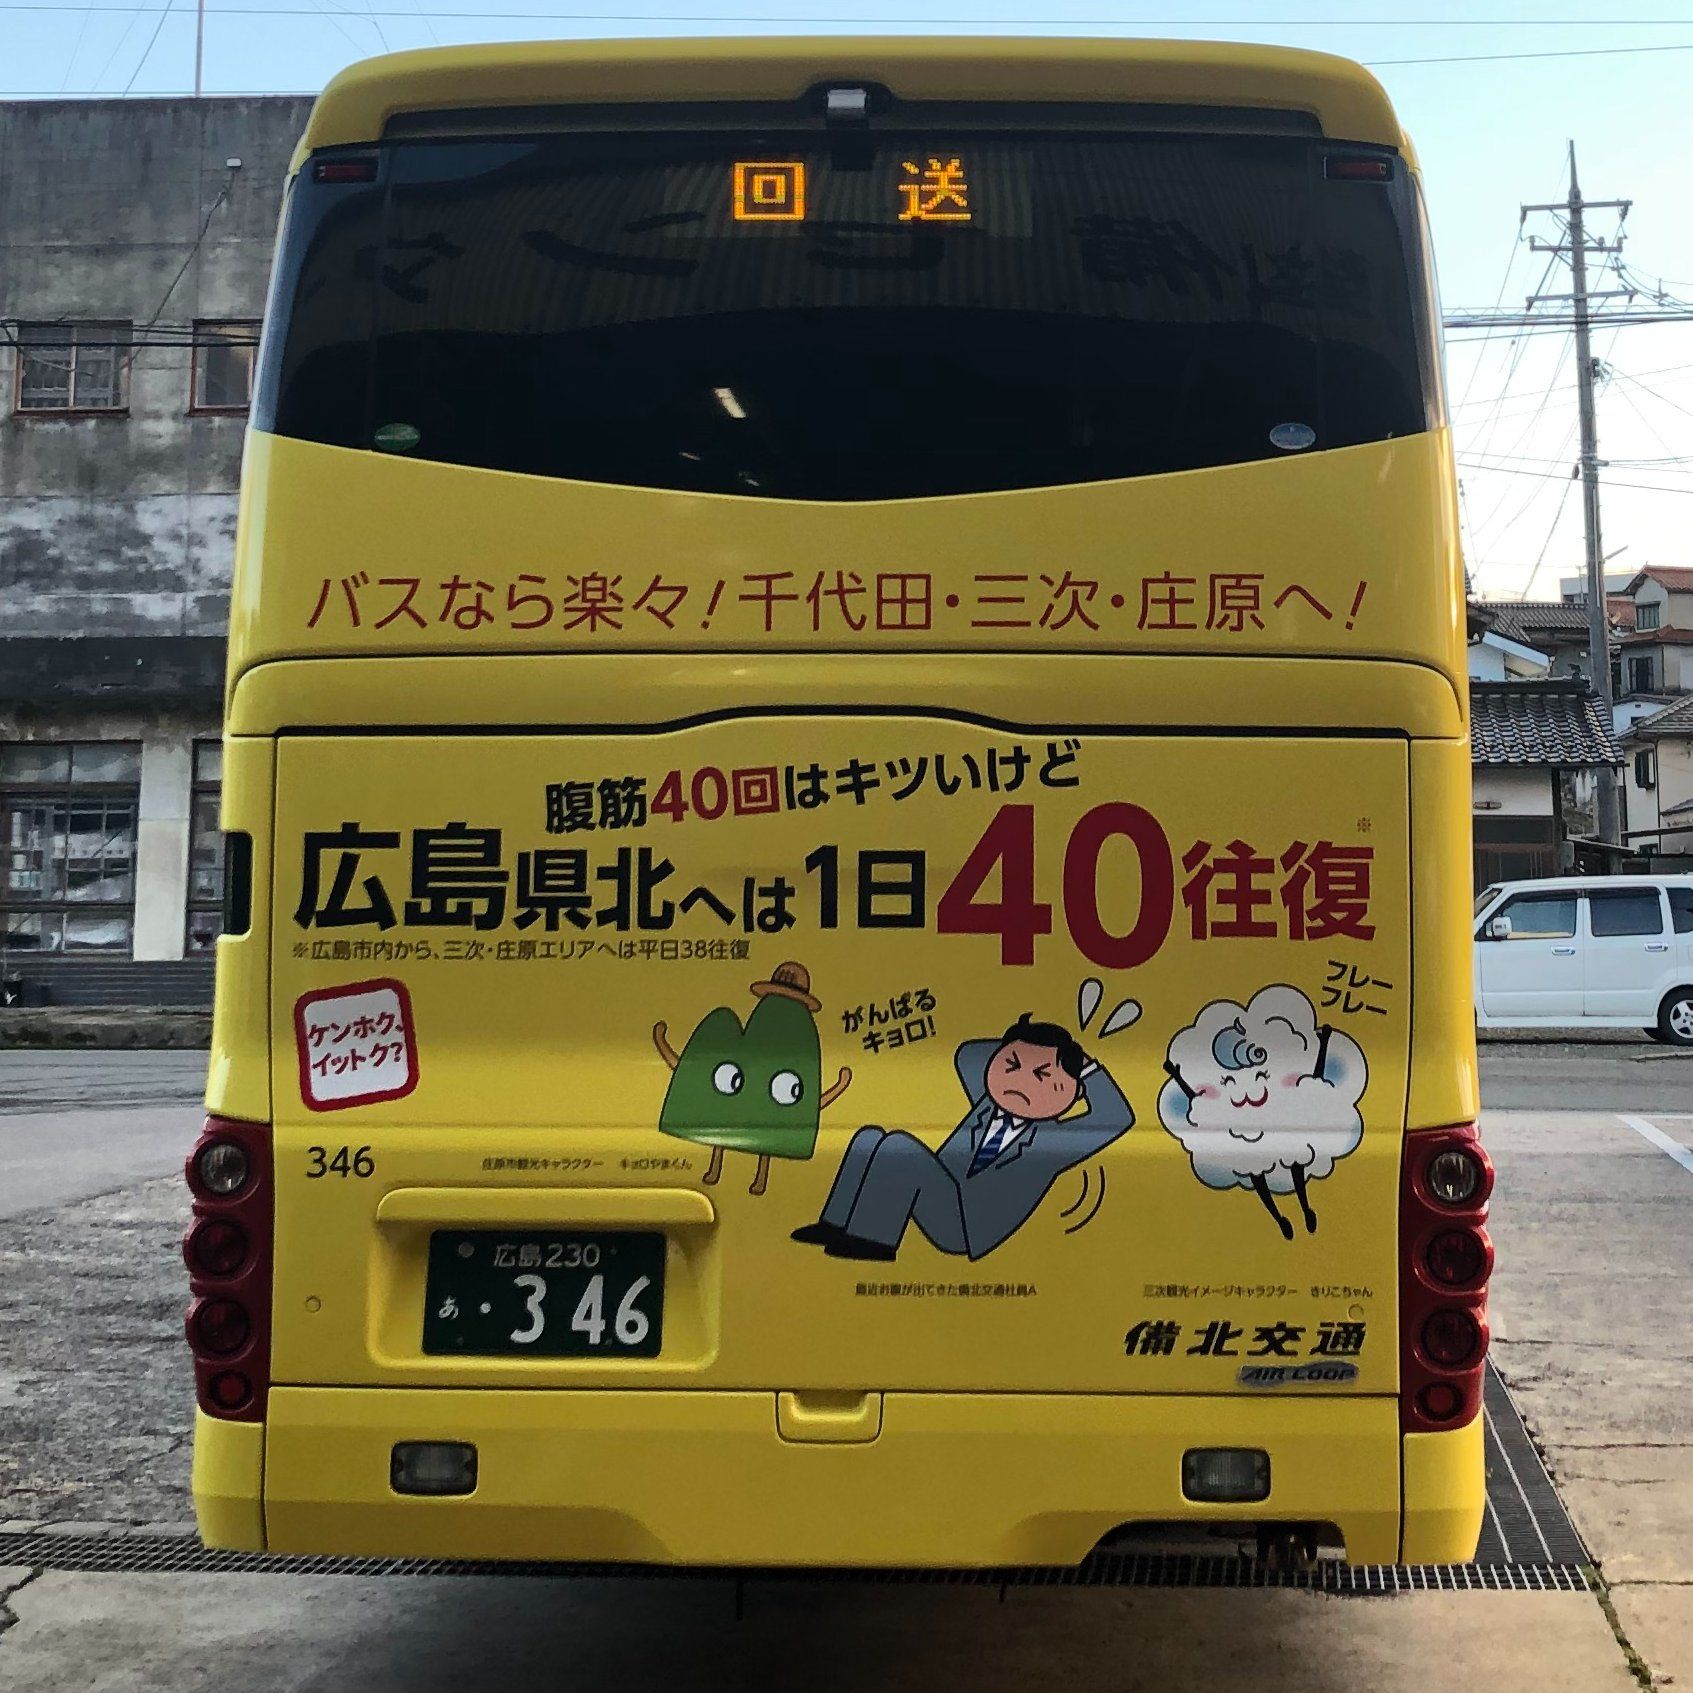 仙台 東京 バス 運行状況